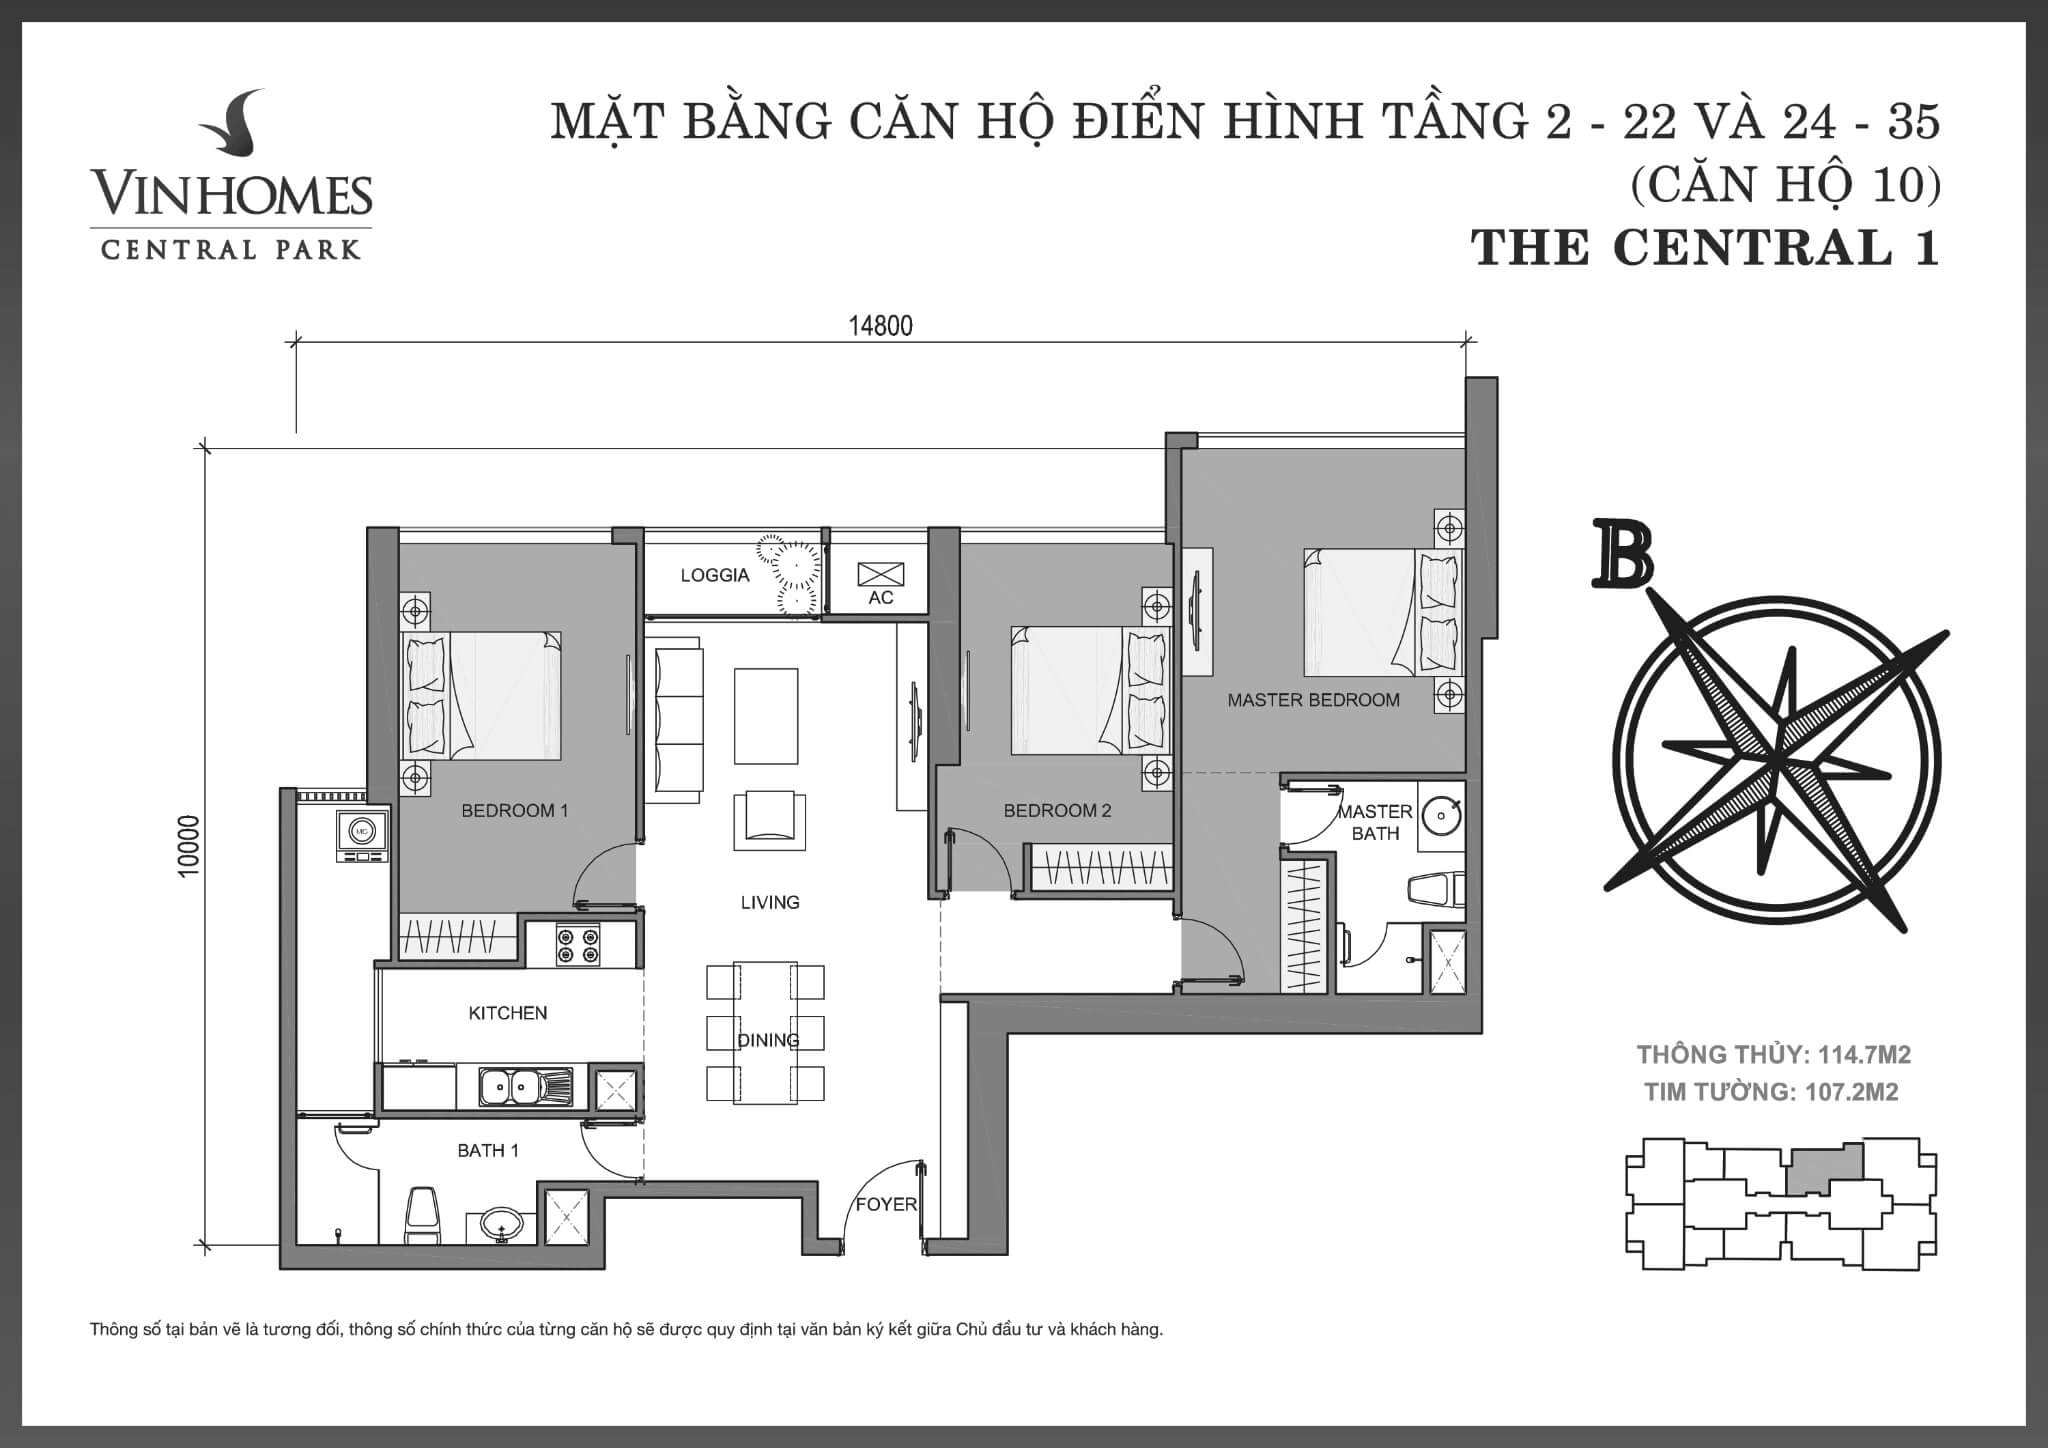 layout căn hộ số 10 tầng 2-35 Central Park